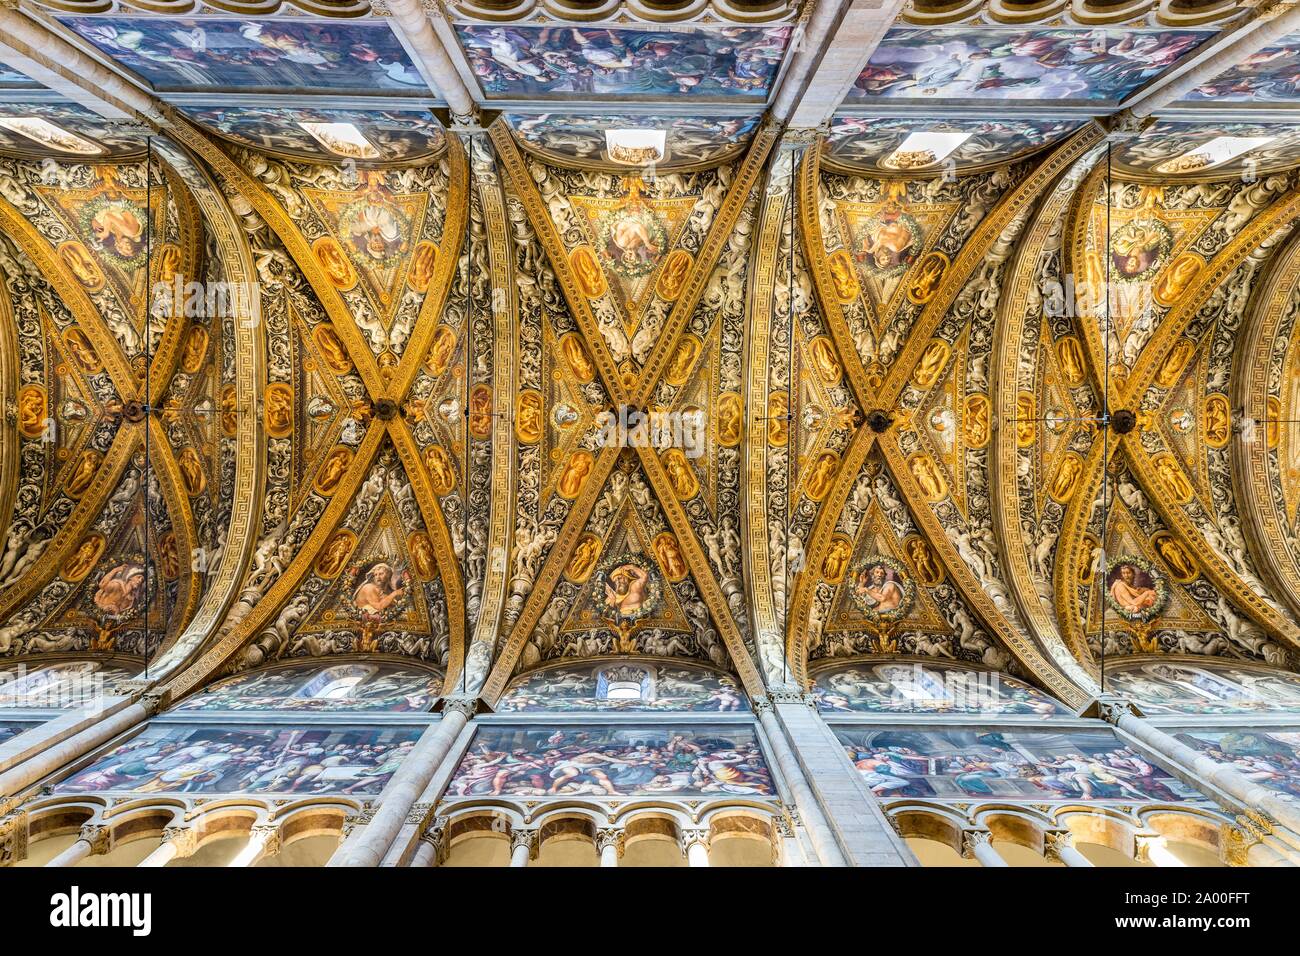 Plafond artistique vault, nef, Cathédrale Santa Maria Assunta, Parme, Emilie-Romagne, Italie Banque D'Images